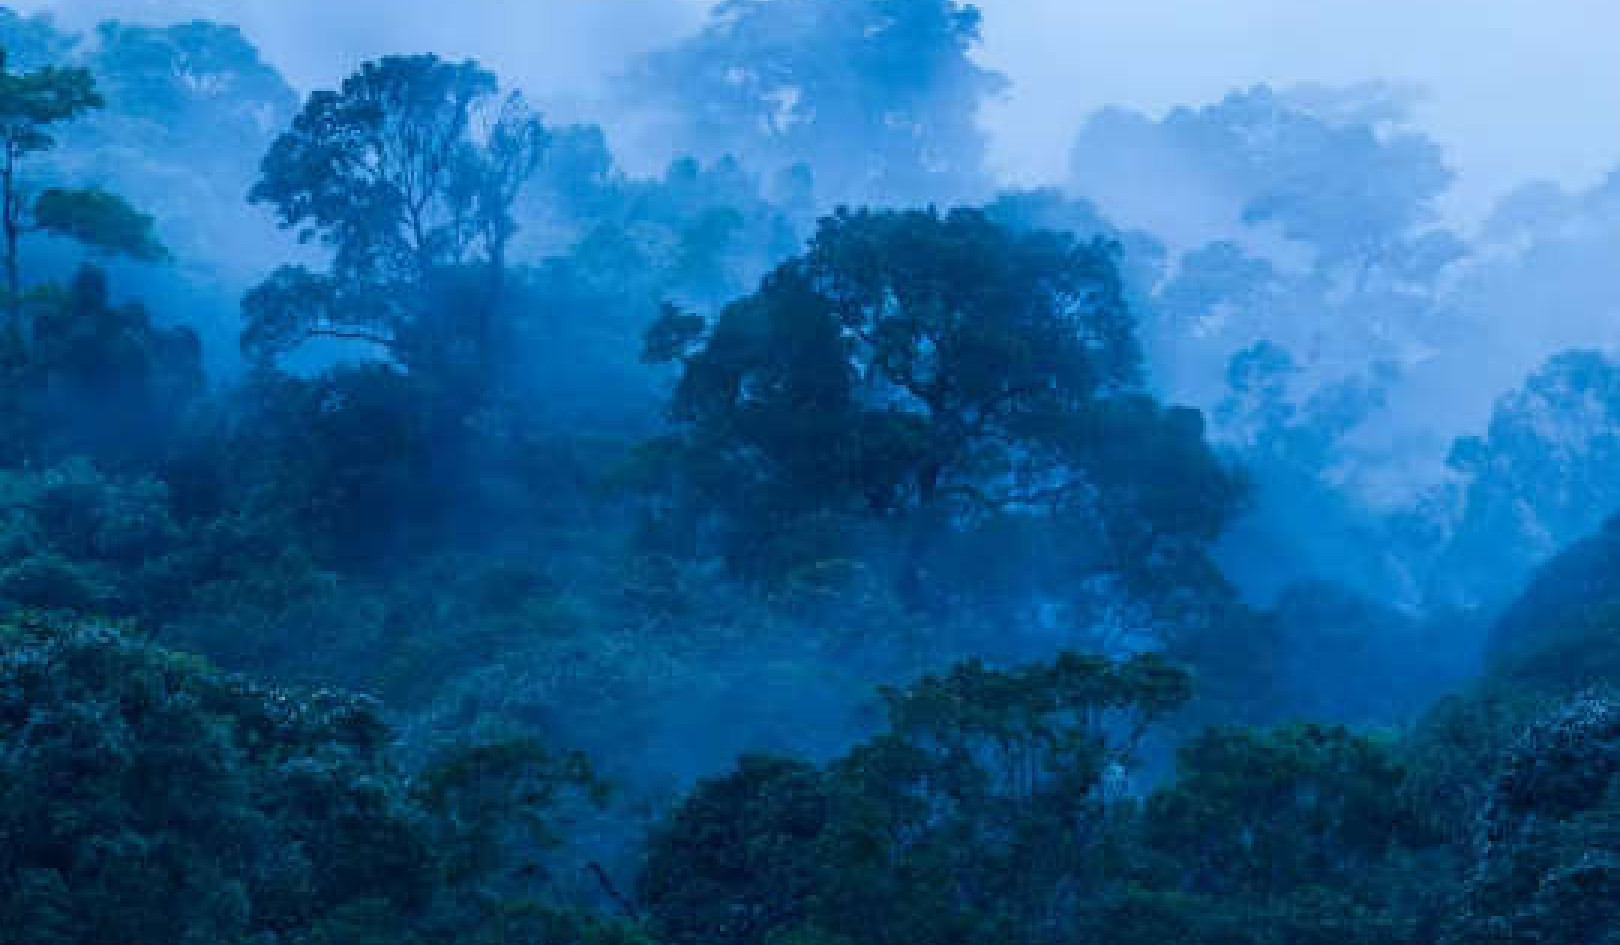 Bossen in de tropen zijn cruciaal voor de aanpak van klimaatverandering